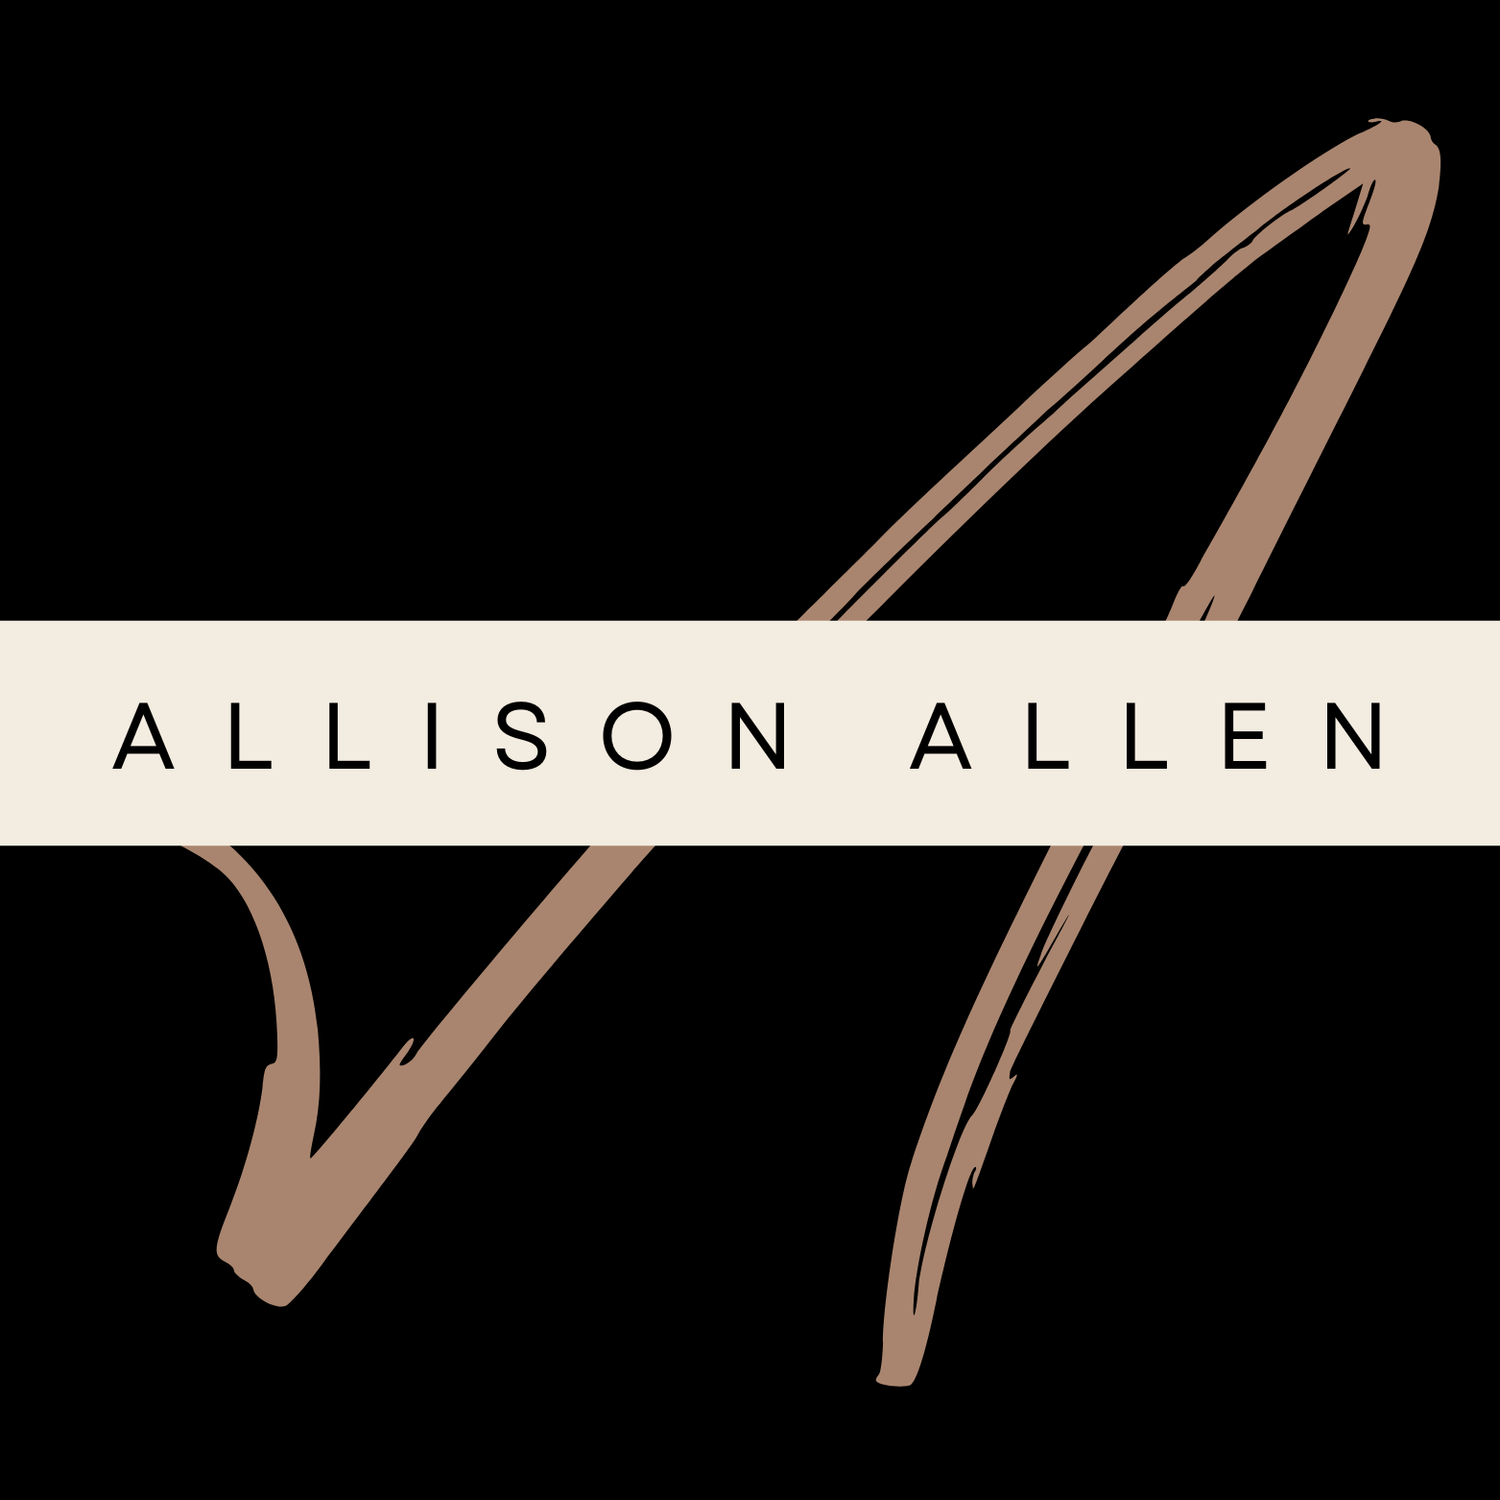 Allison Allen